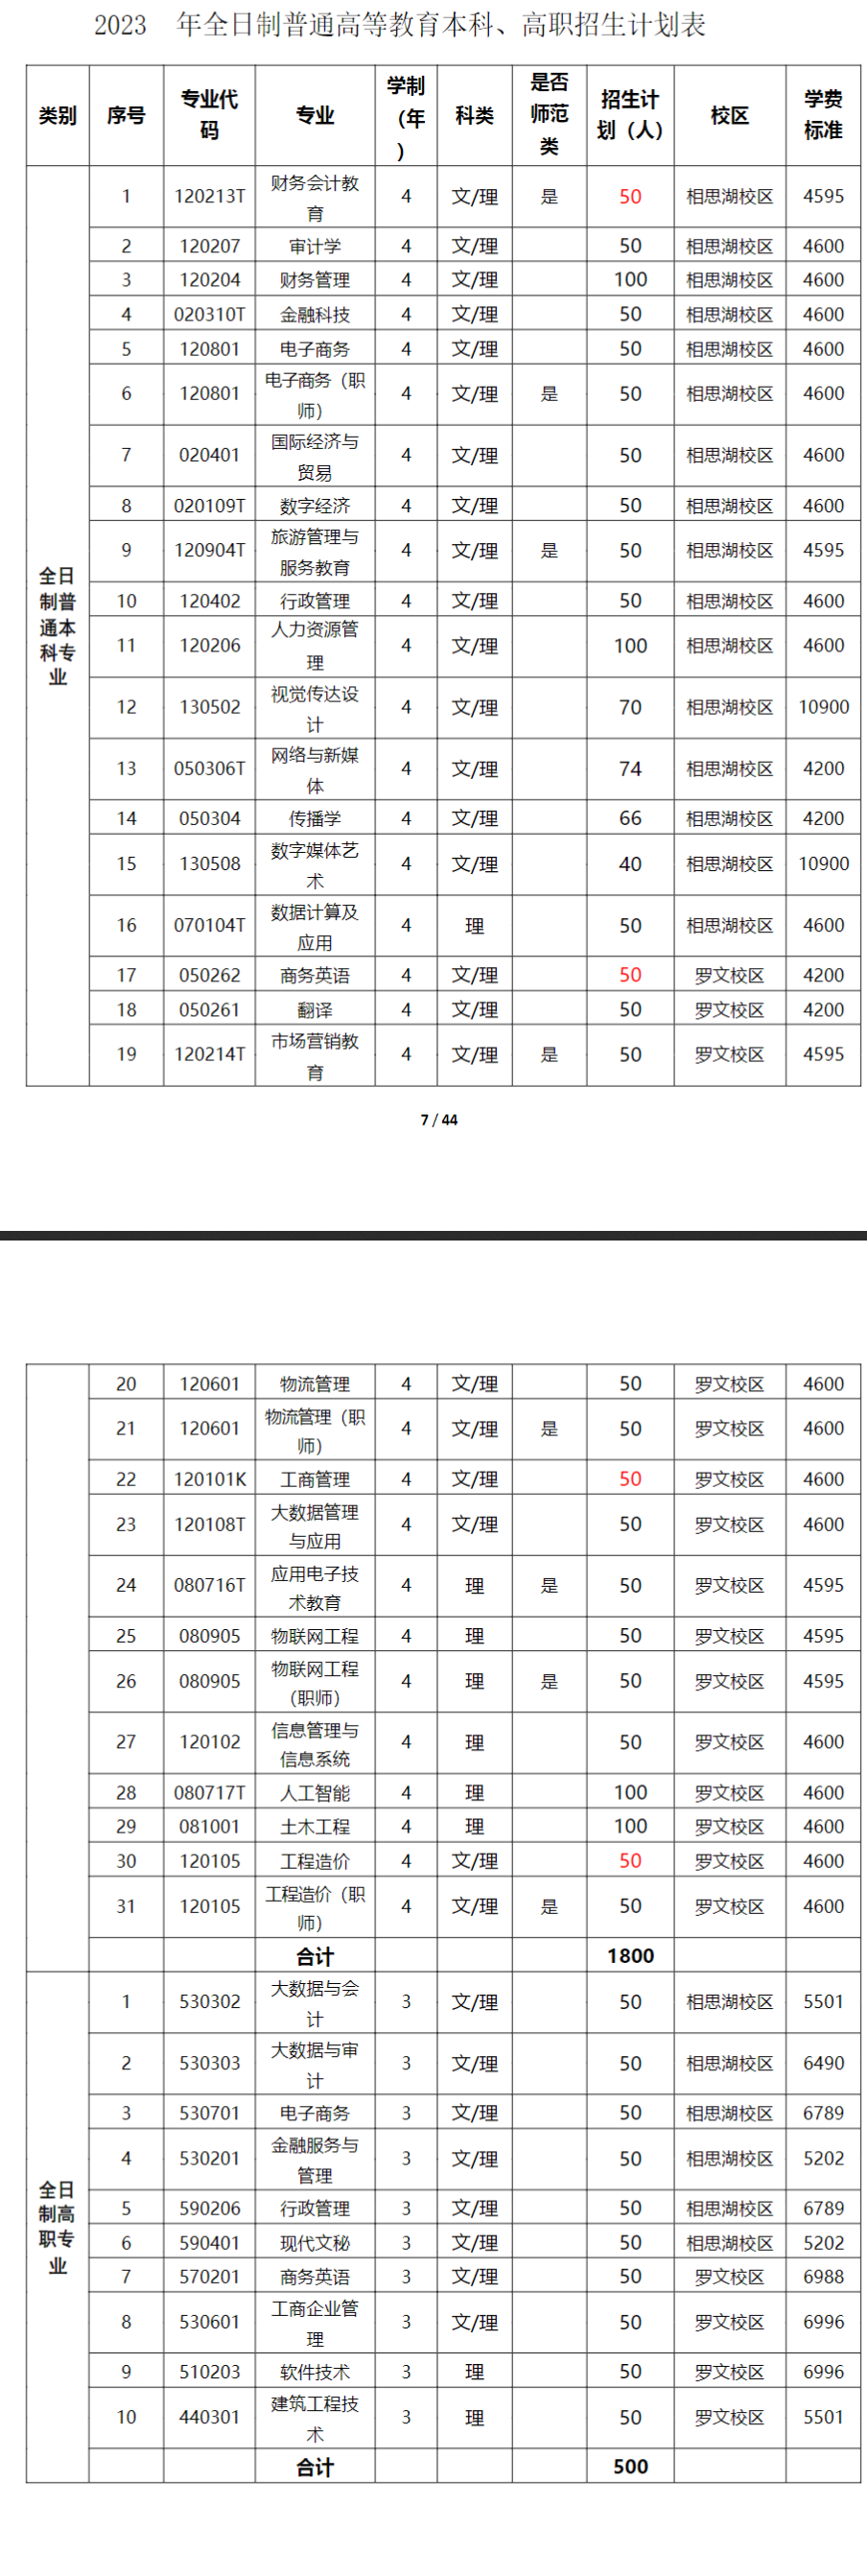 广西职业师范学院2023年招生简章及各省招生计划人数